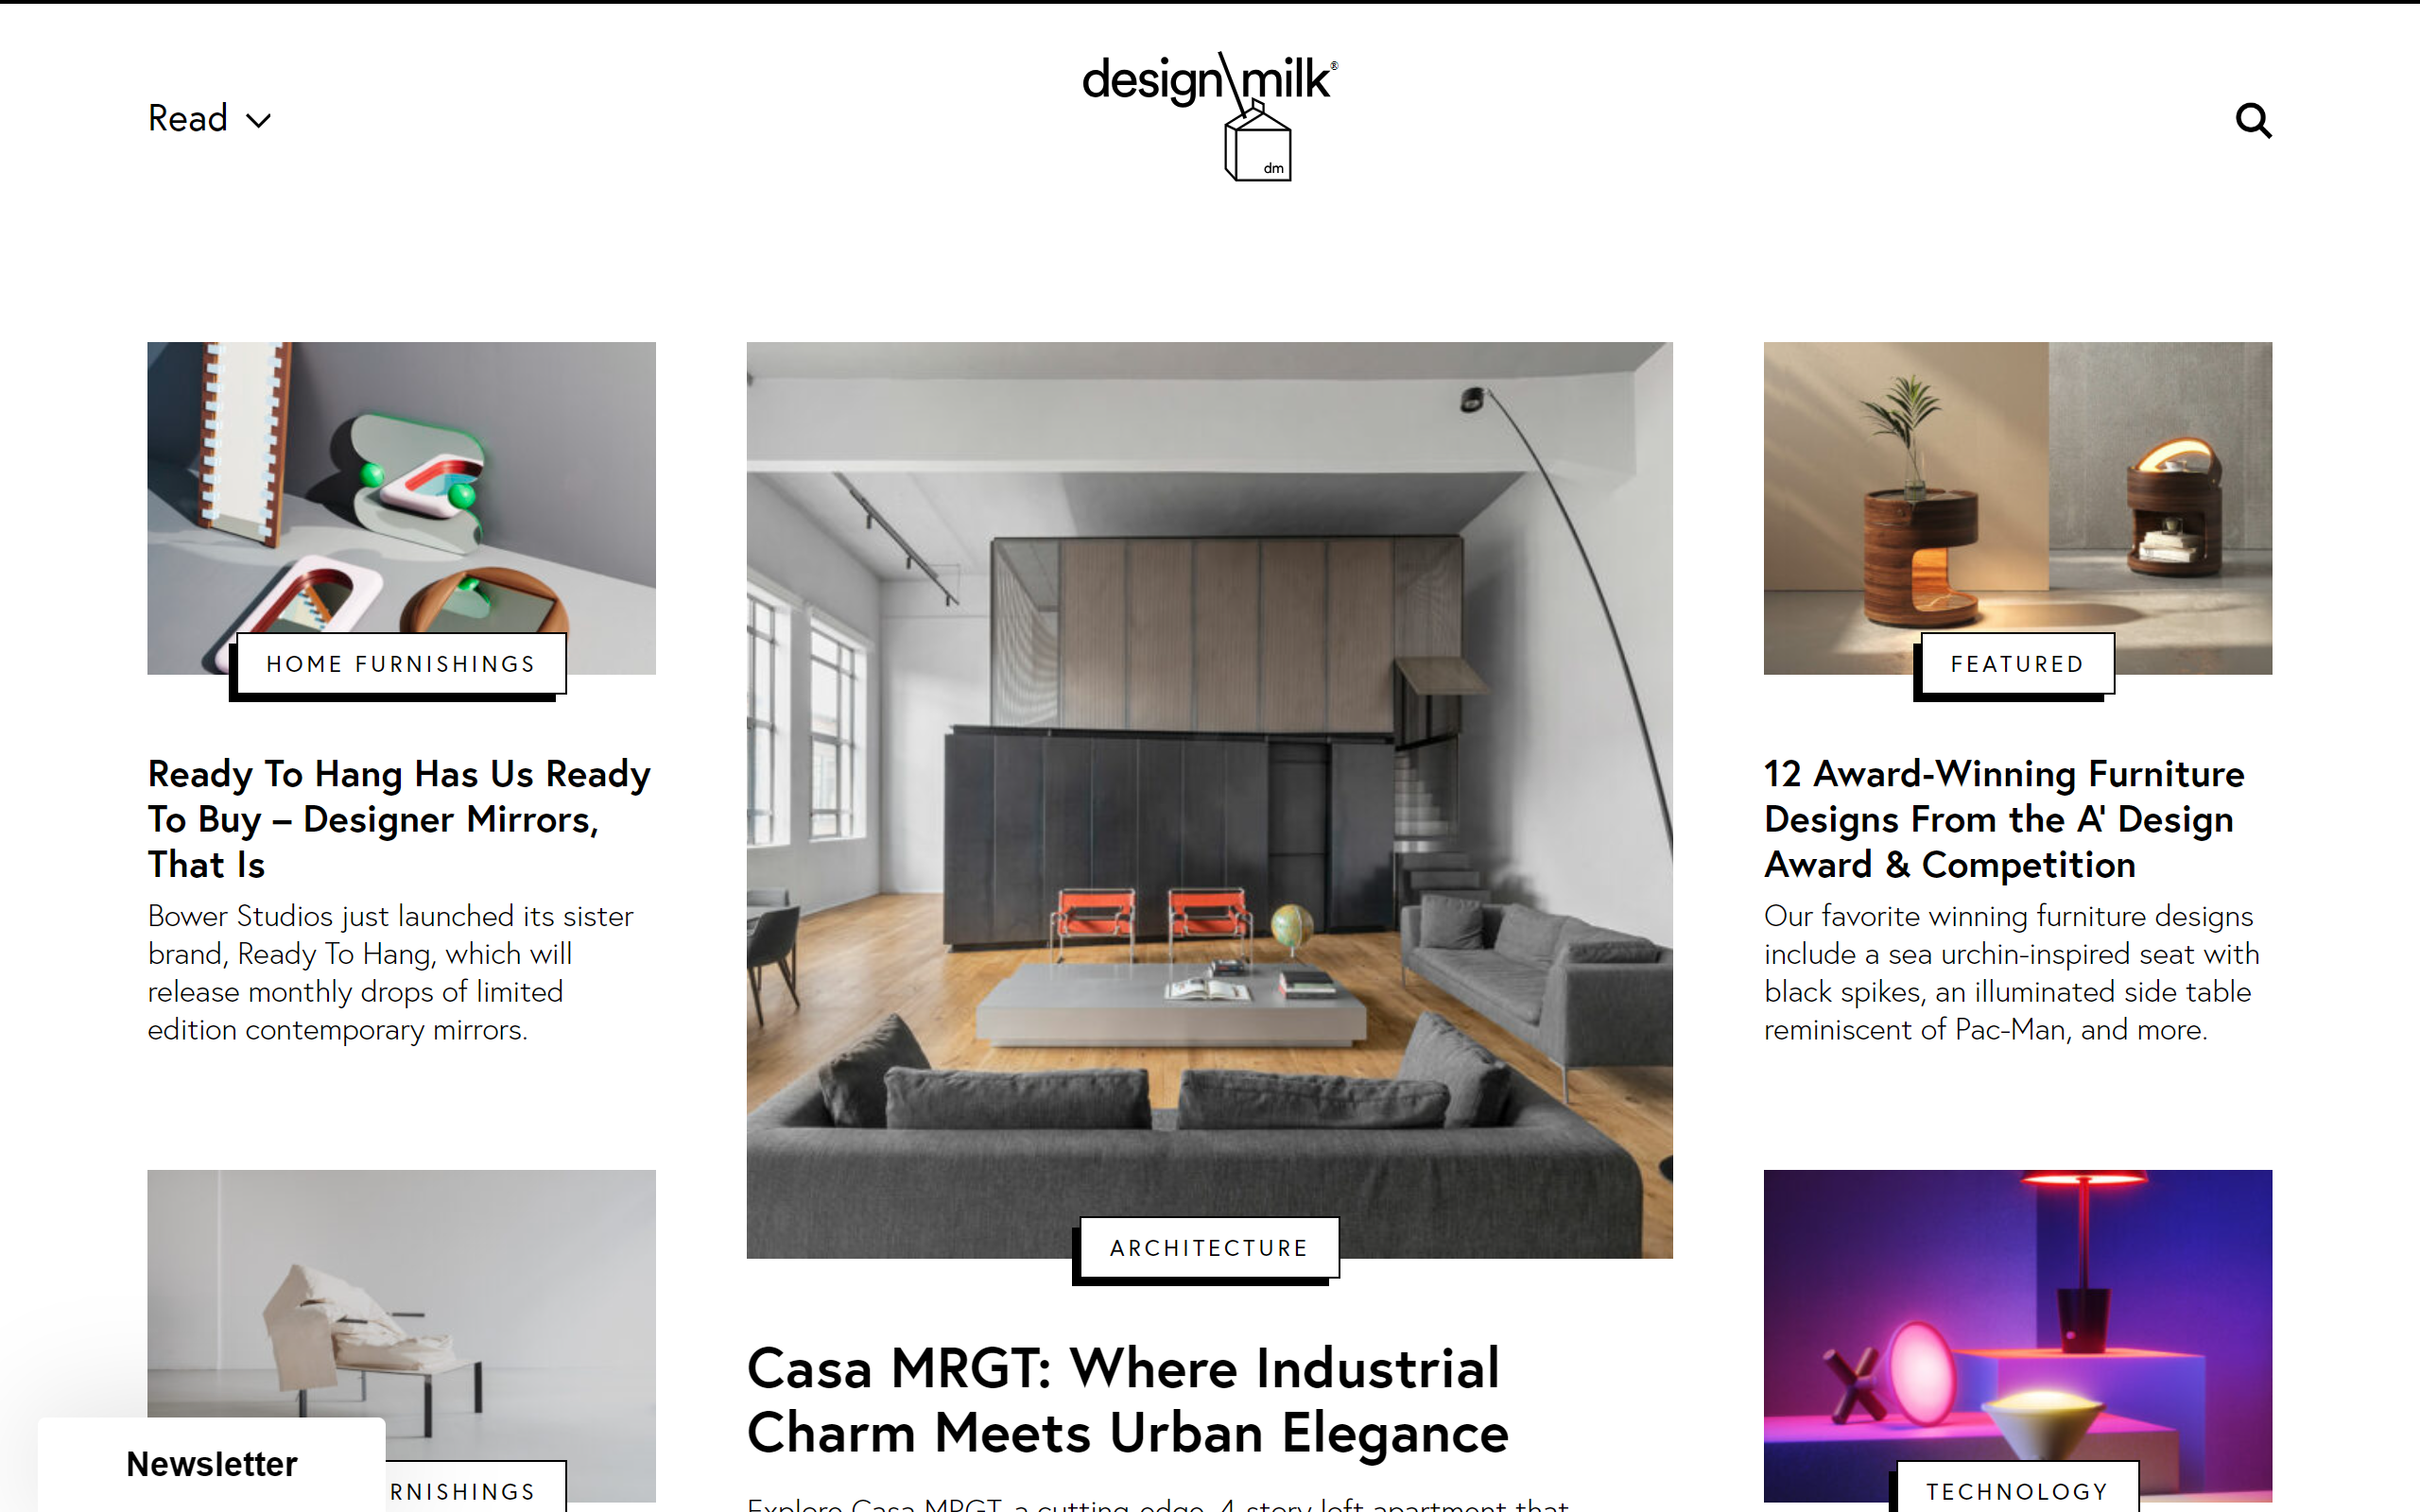 Design Milk interior design blog